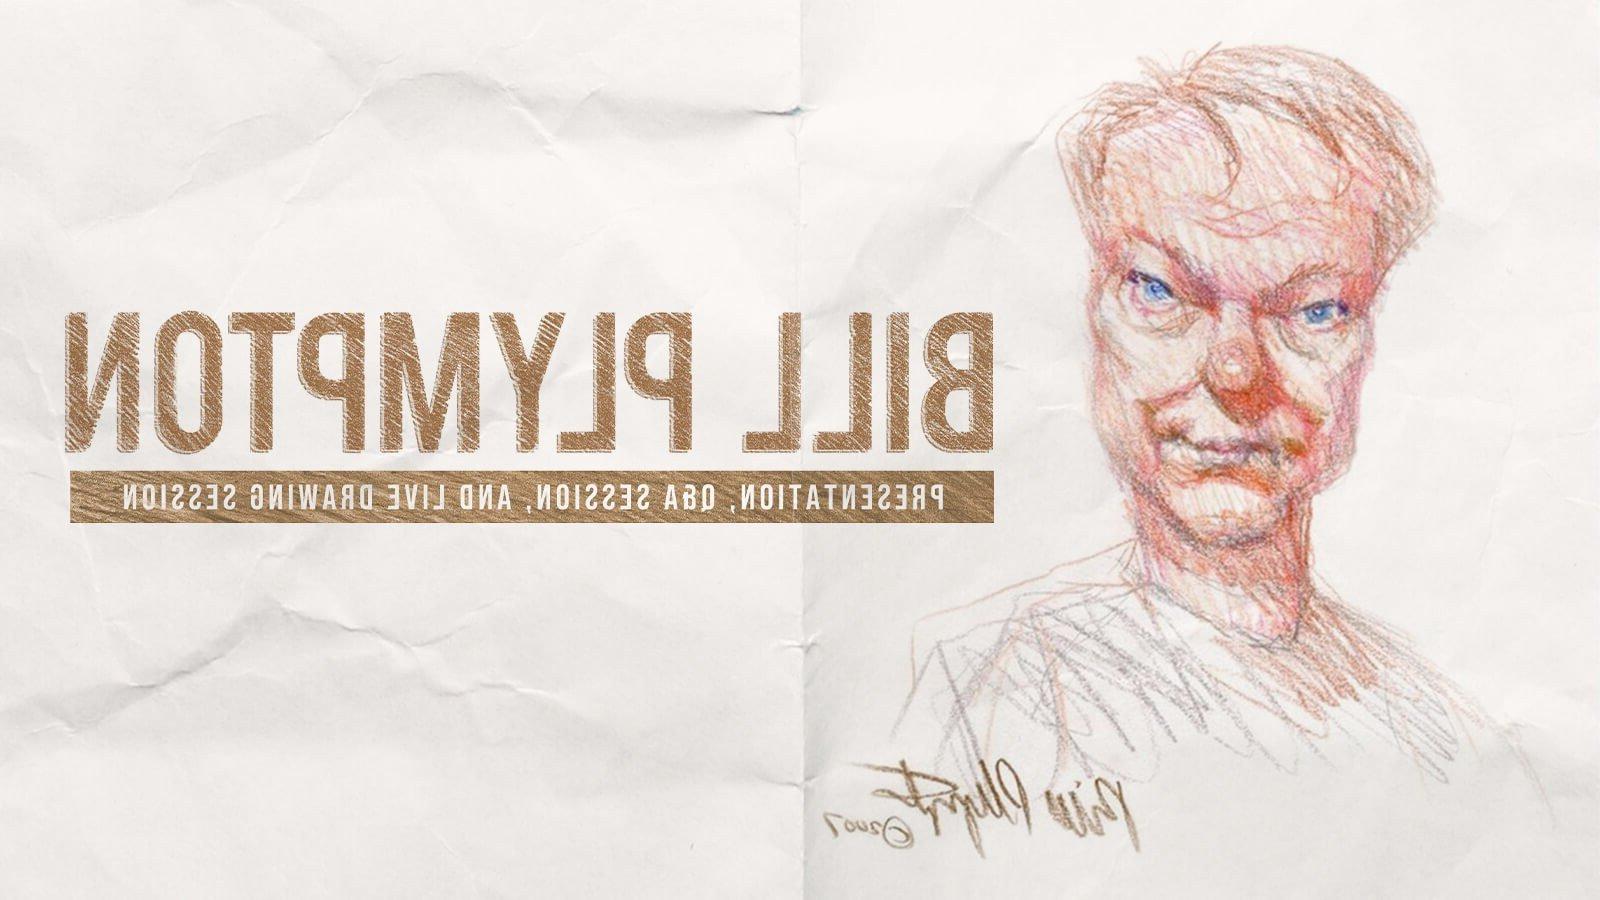 美国动画师比尔·普林顿的素描, drawn and signed by Bill, sits next to the text, 比尔·普林顿:演讲, Q&会议和现场绘图会议.